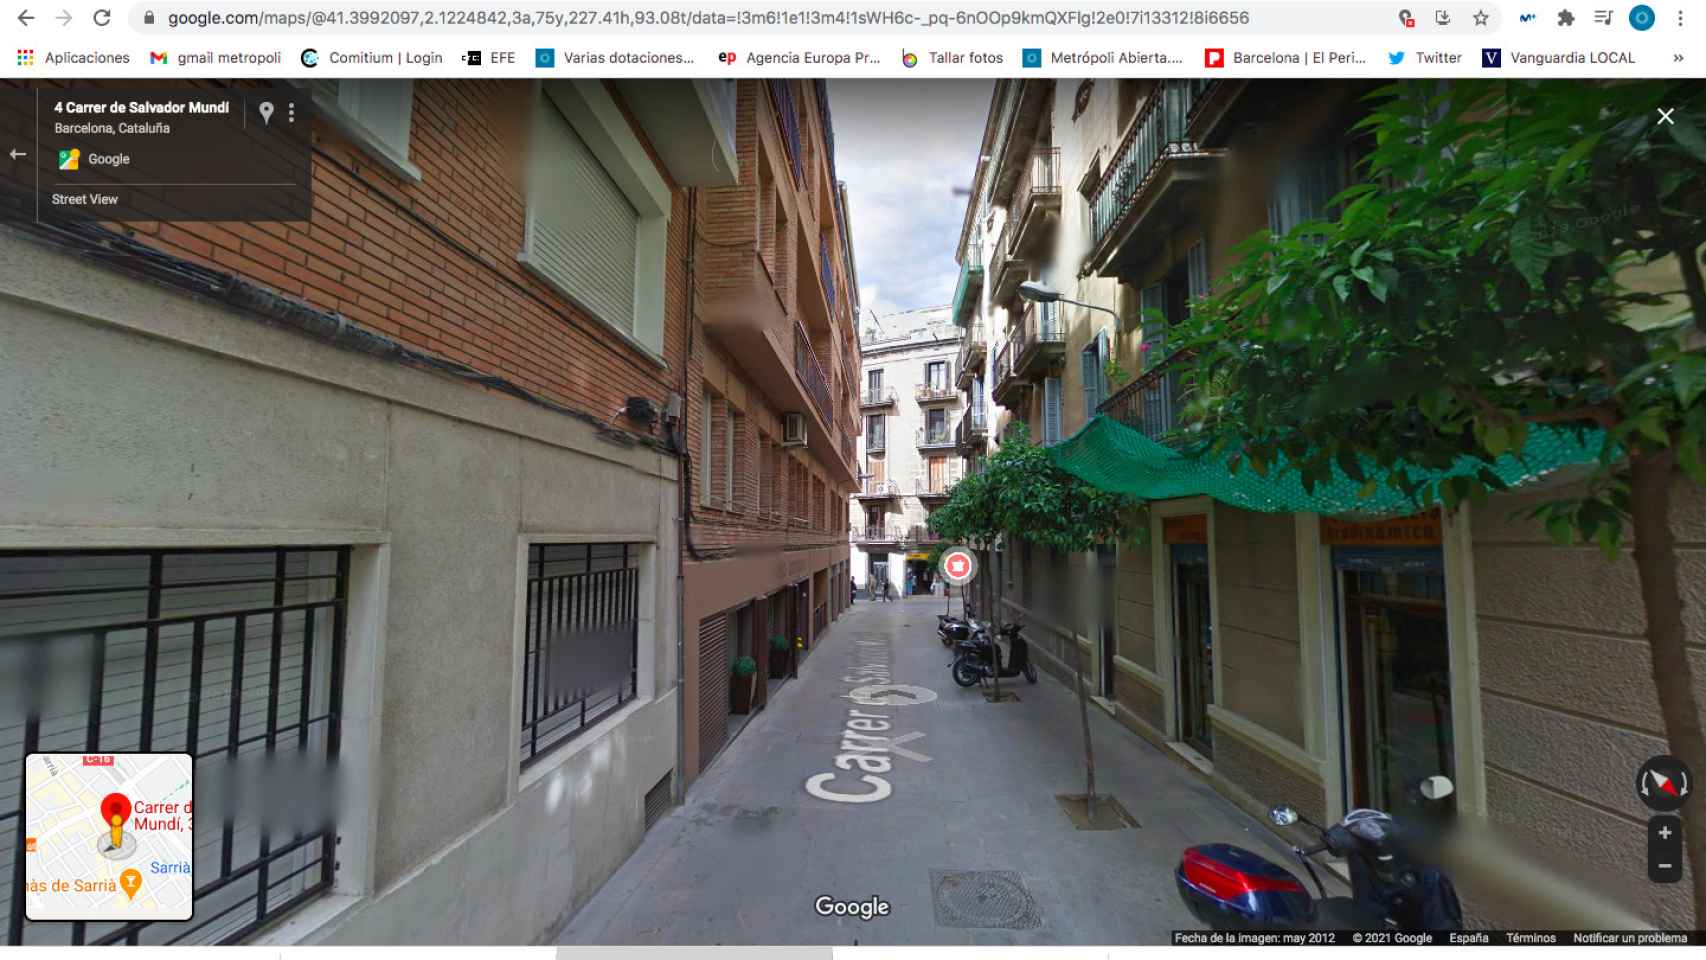 La calle Salvador Mundi donde ha tenido lugar la okupación / GOOGLE MAPS